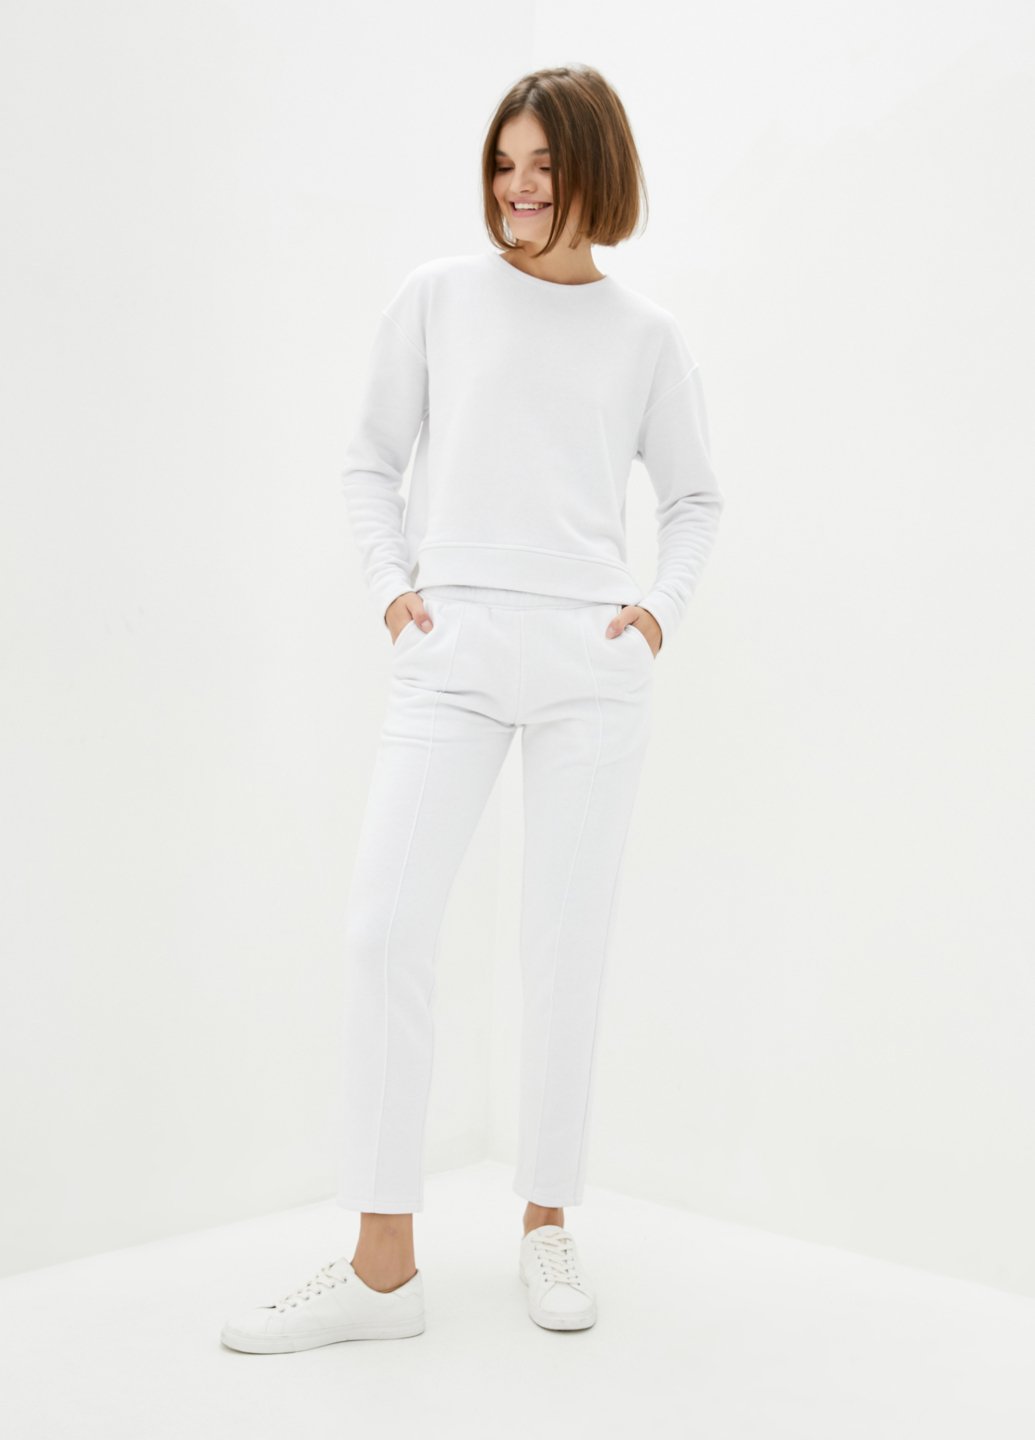 Купить Костюм женский белого цвета Merlini Кампден 100000075, размер 42-44 в интернет-магазине